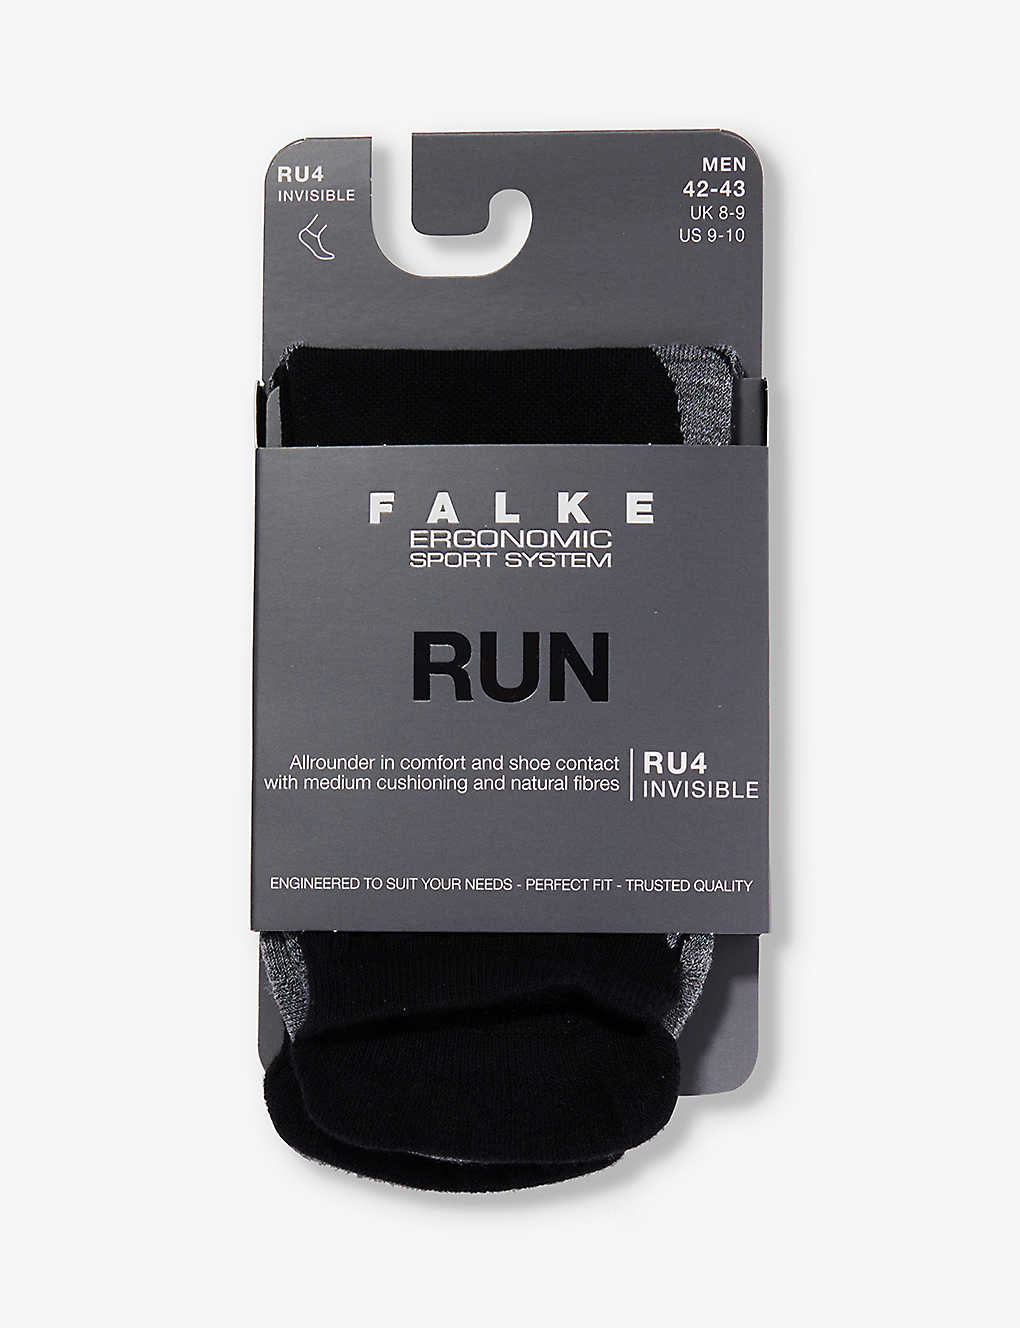 Falke Ergonomic Sport System Mens Black Mix Run Mid-calf Stretch-knit Socks